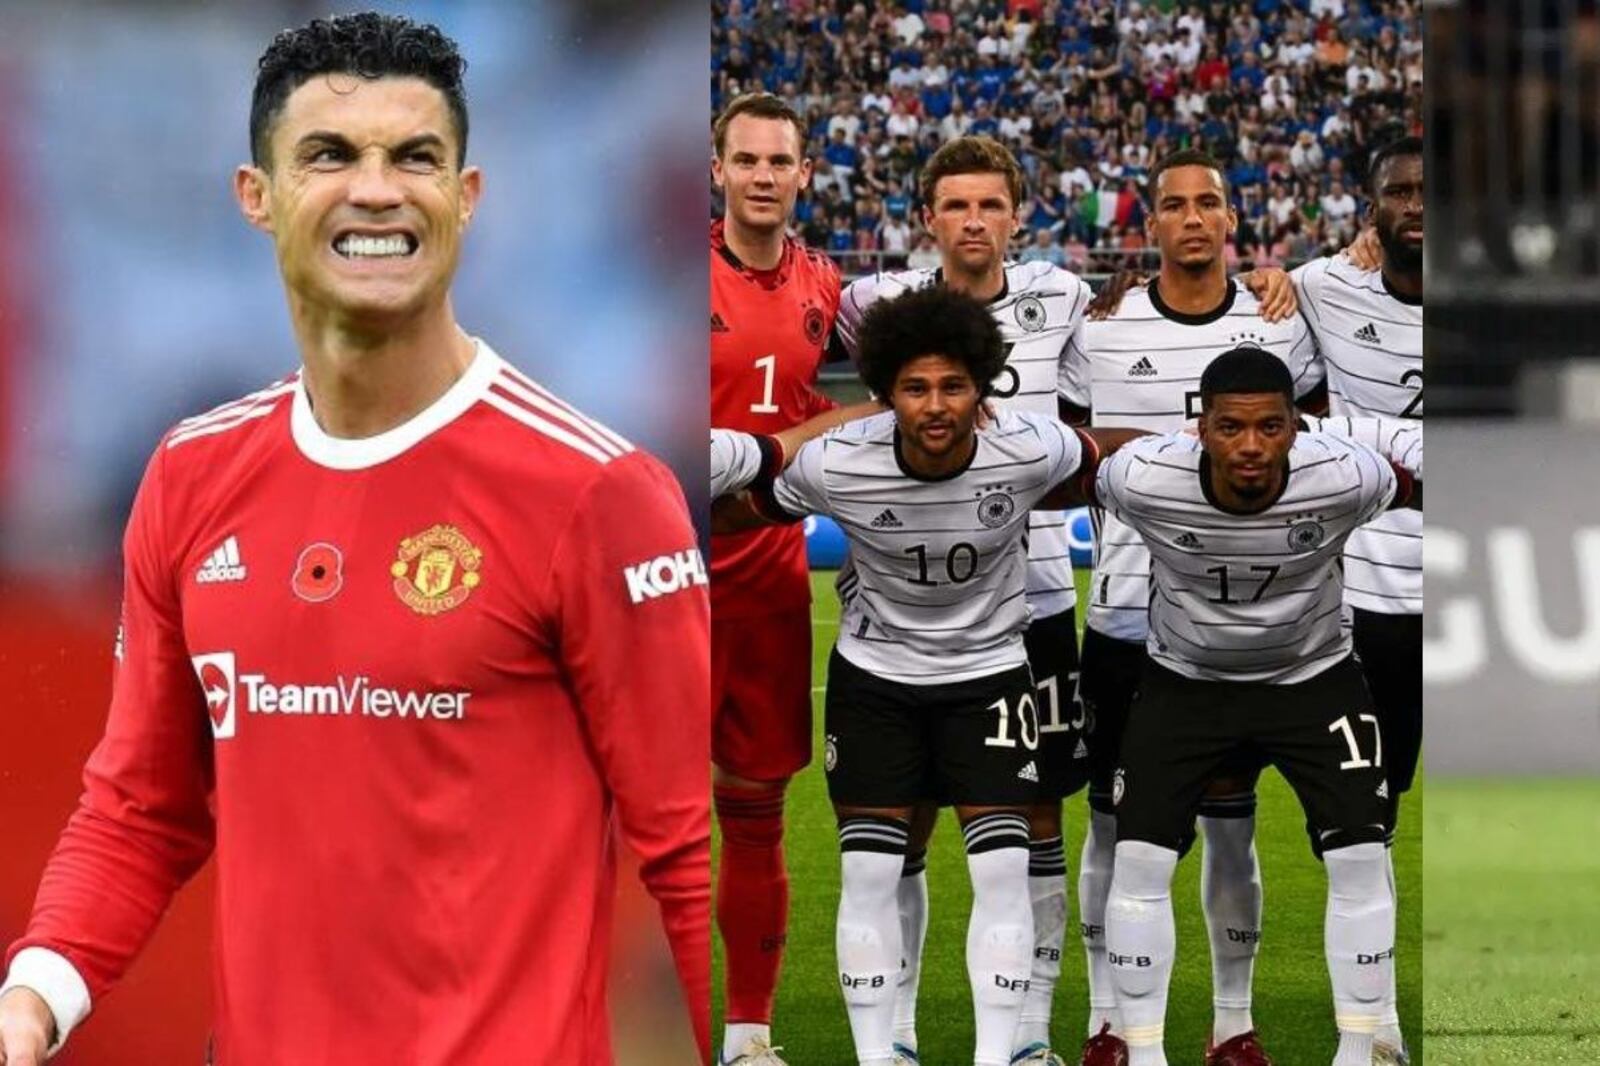 The German star who prefers Cristiano Ronaldo over Lionel Messi